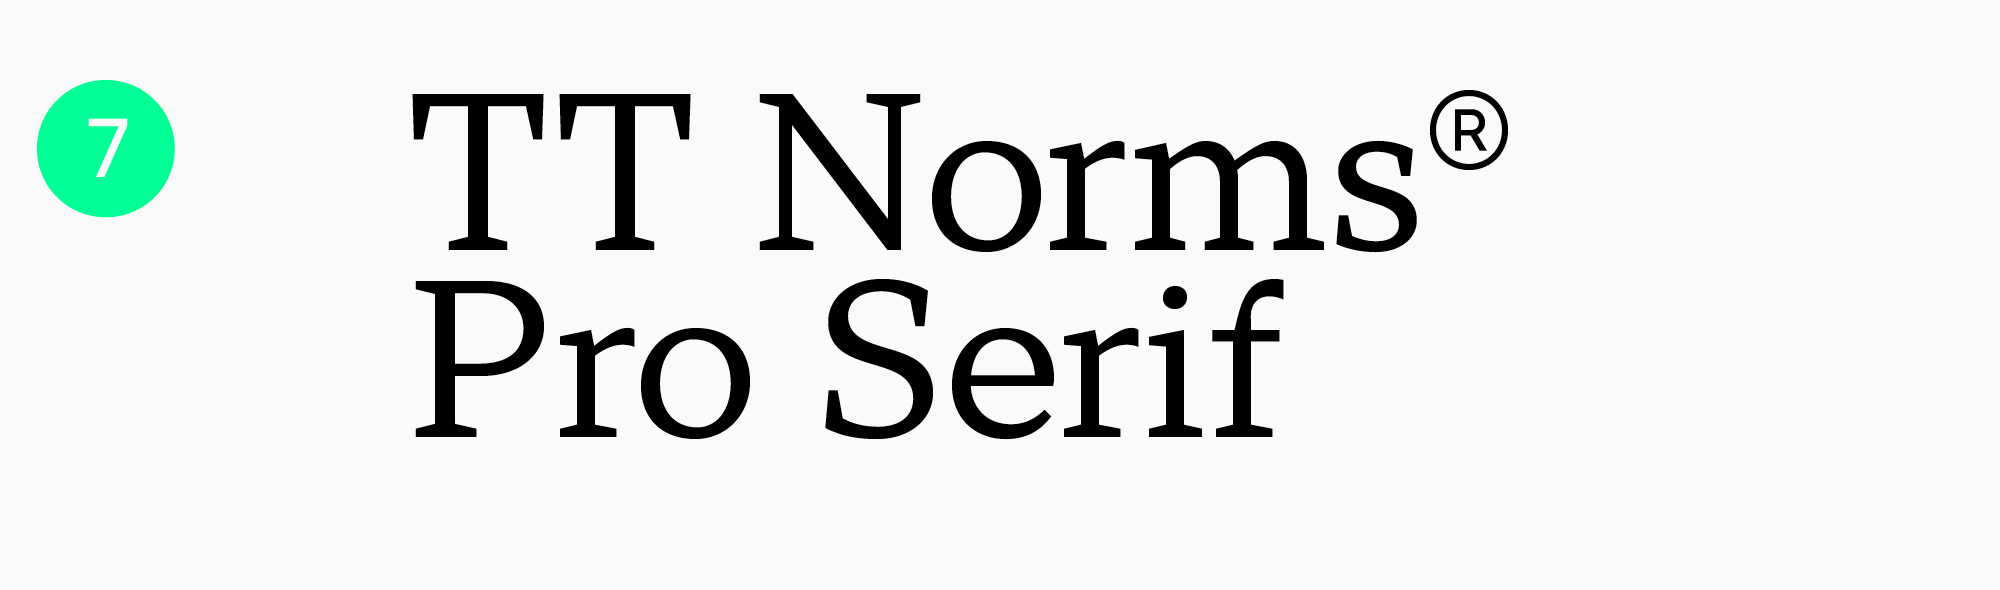 топ шрифтов для чтения
TT Norms Pro Serif